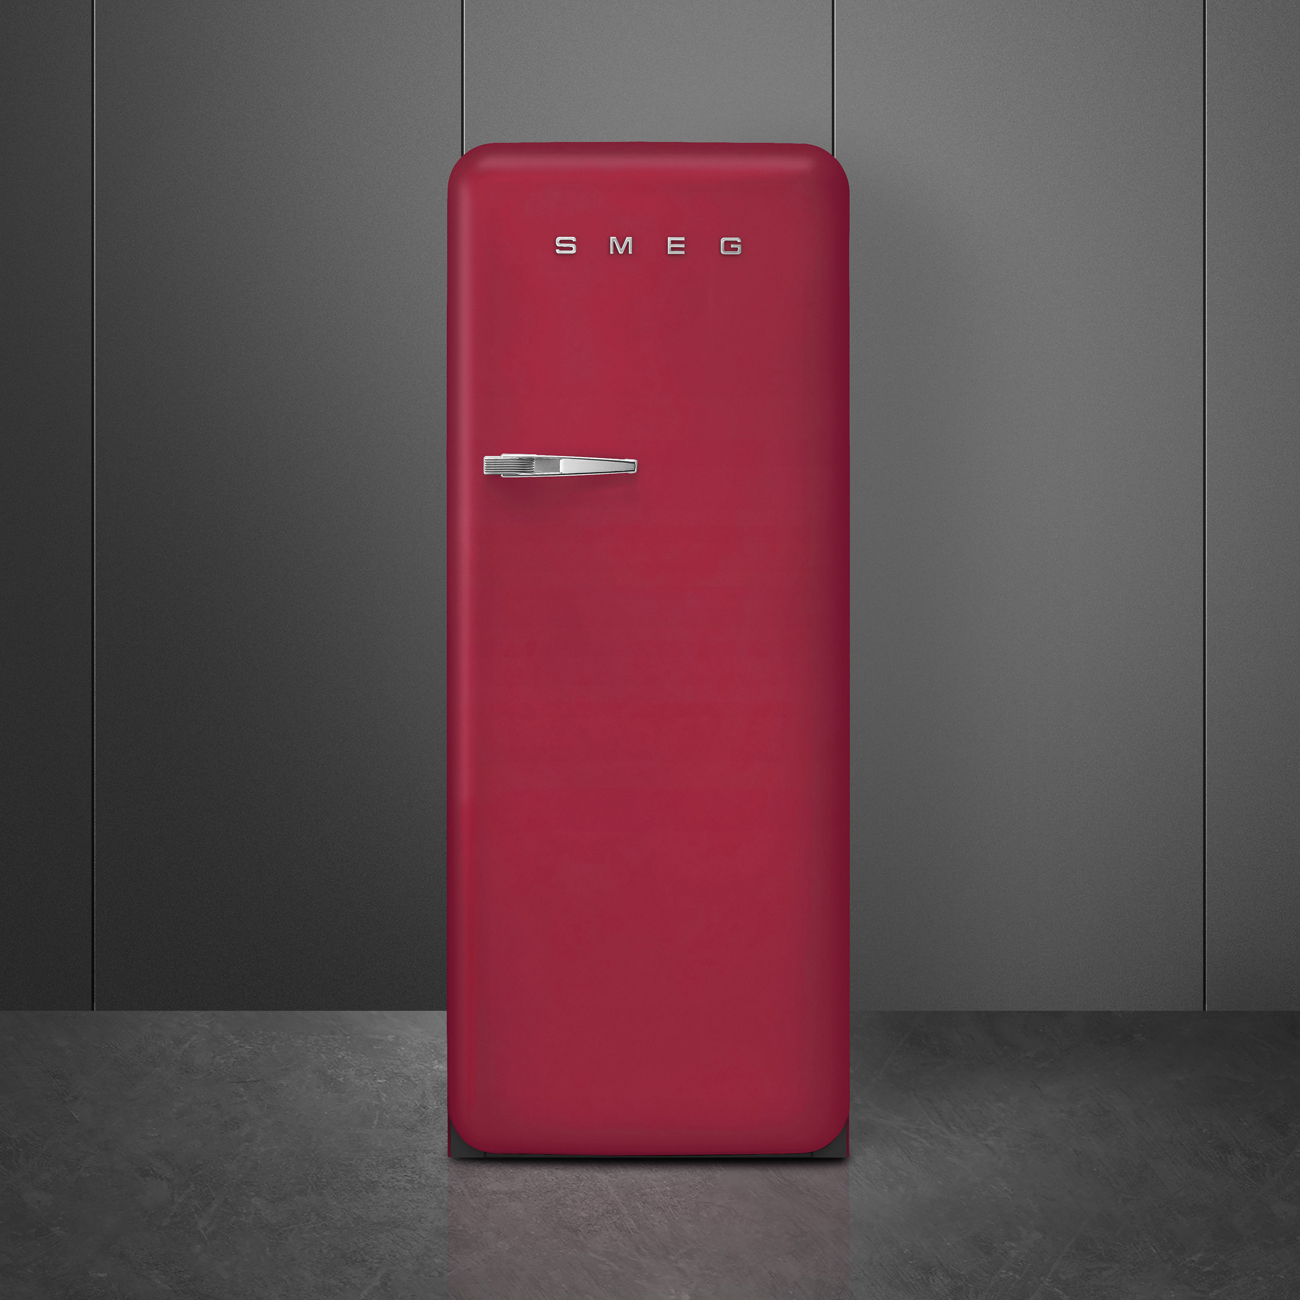 Ruby Red refrigerator - Smeg_10